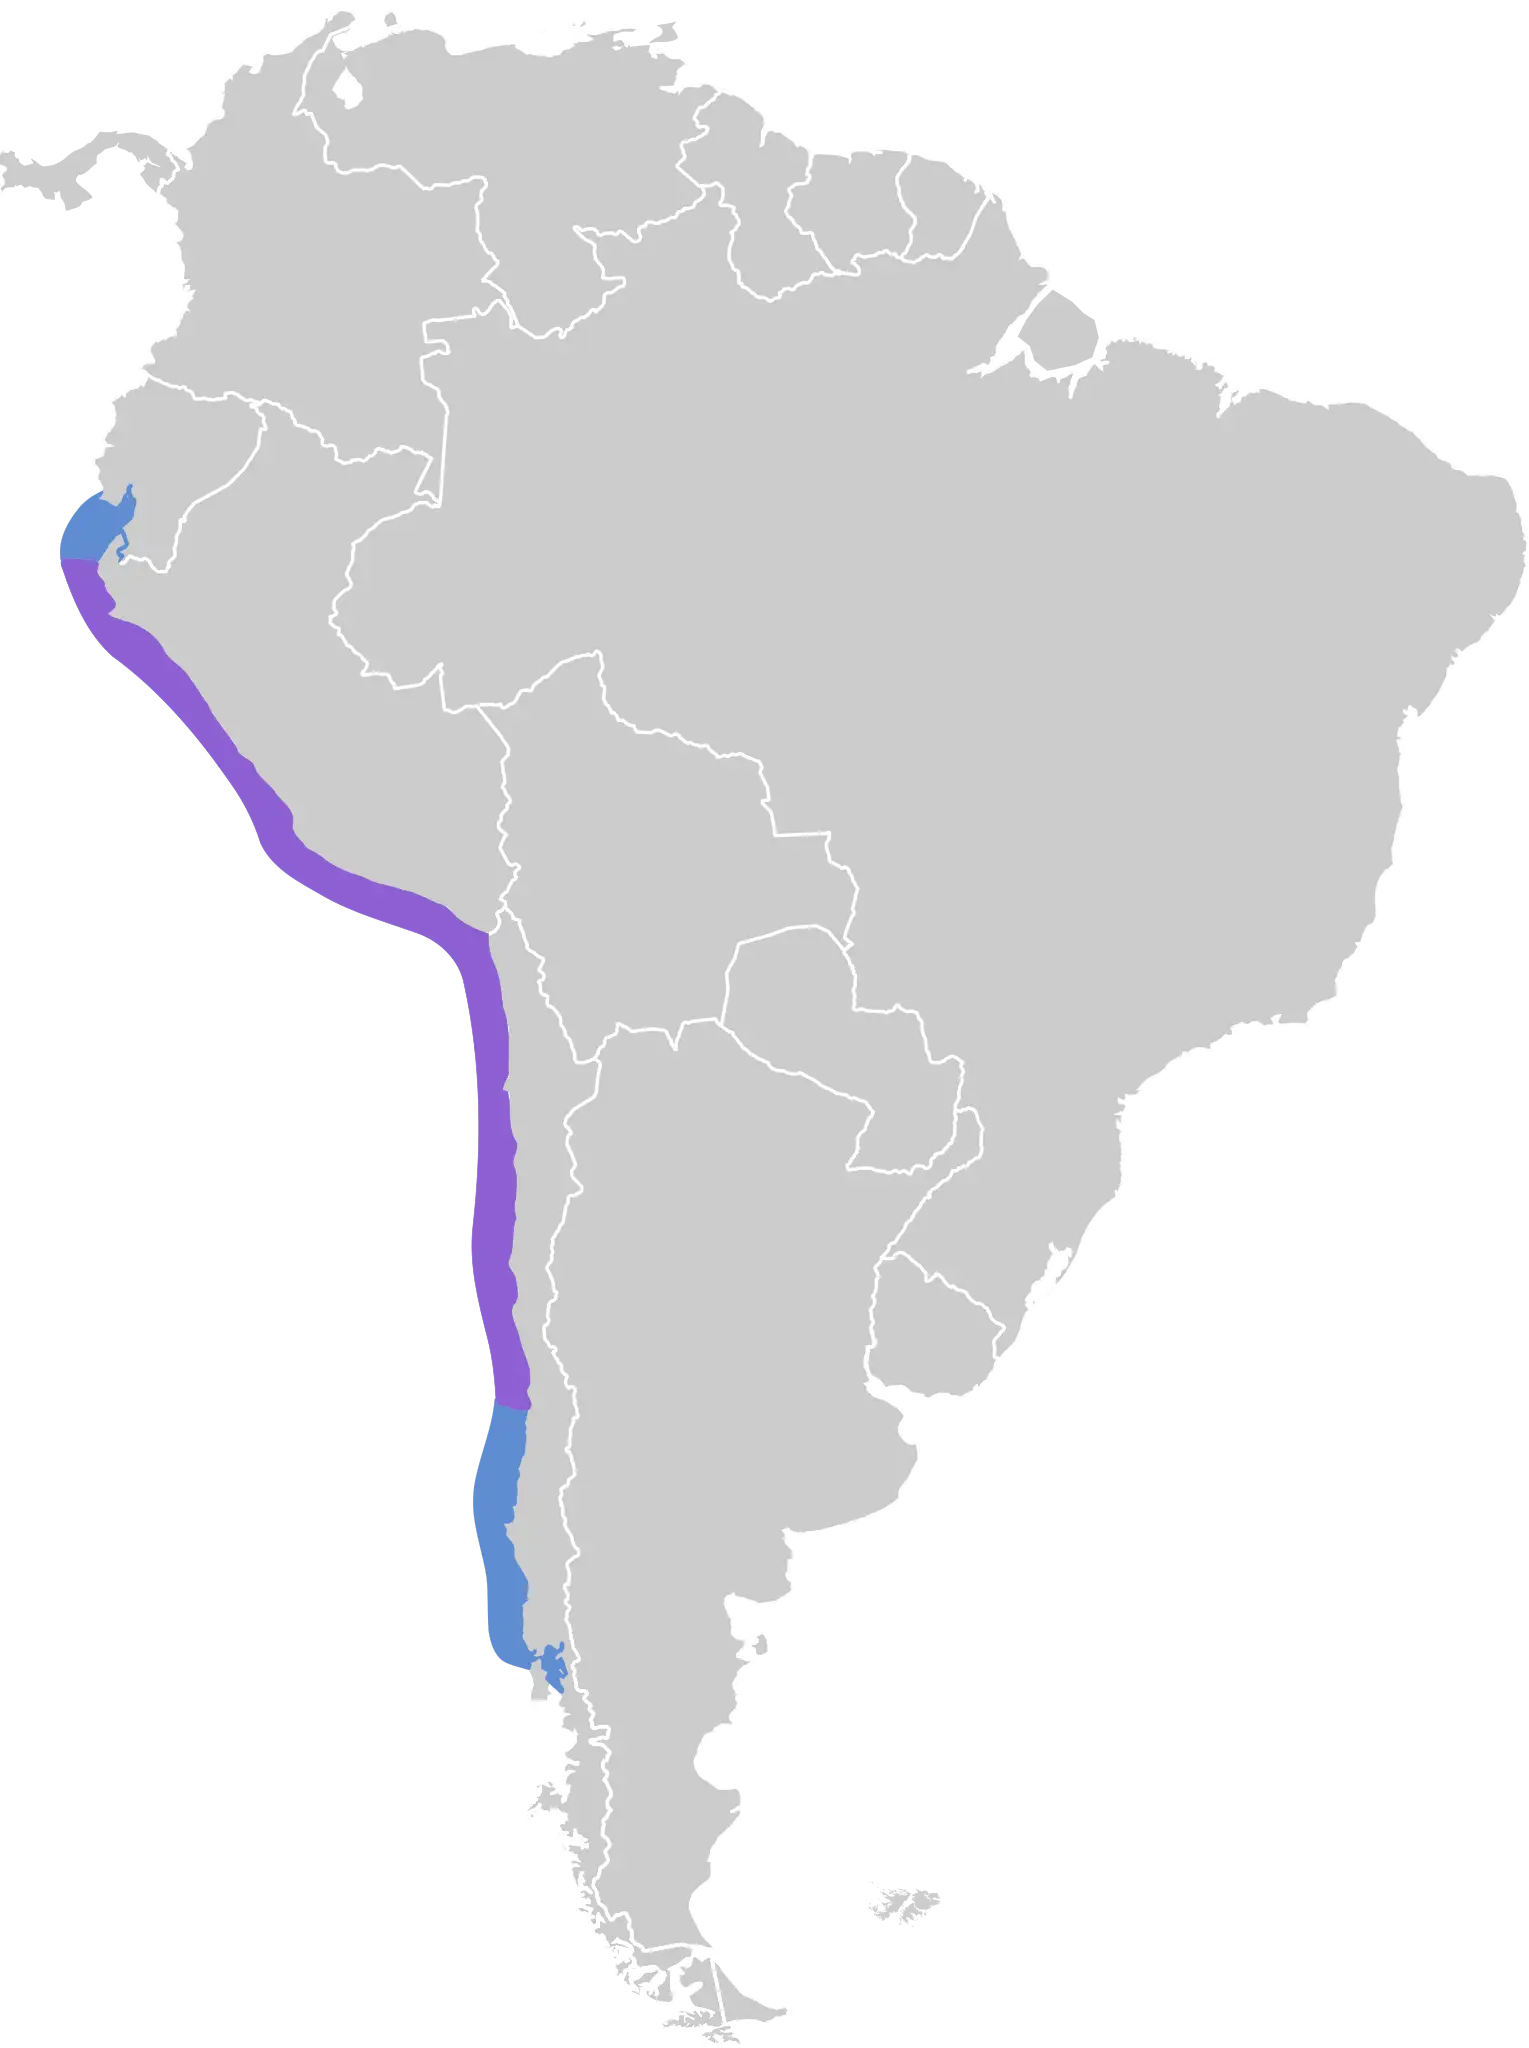 Peruvian pelican habitat map